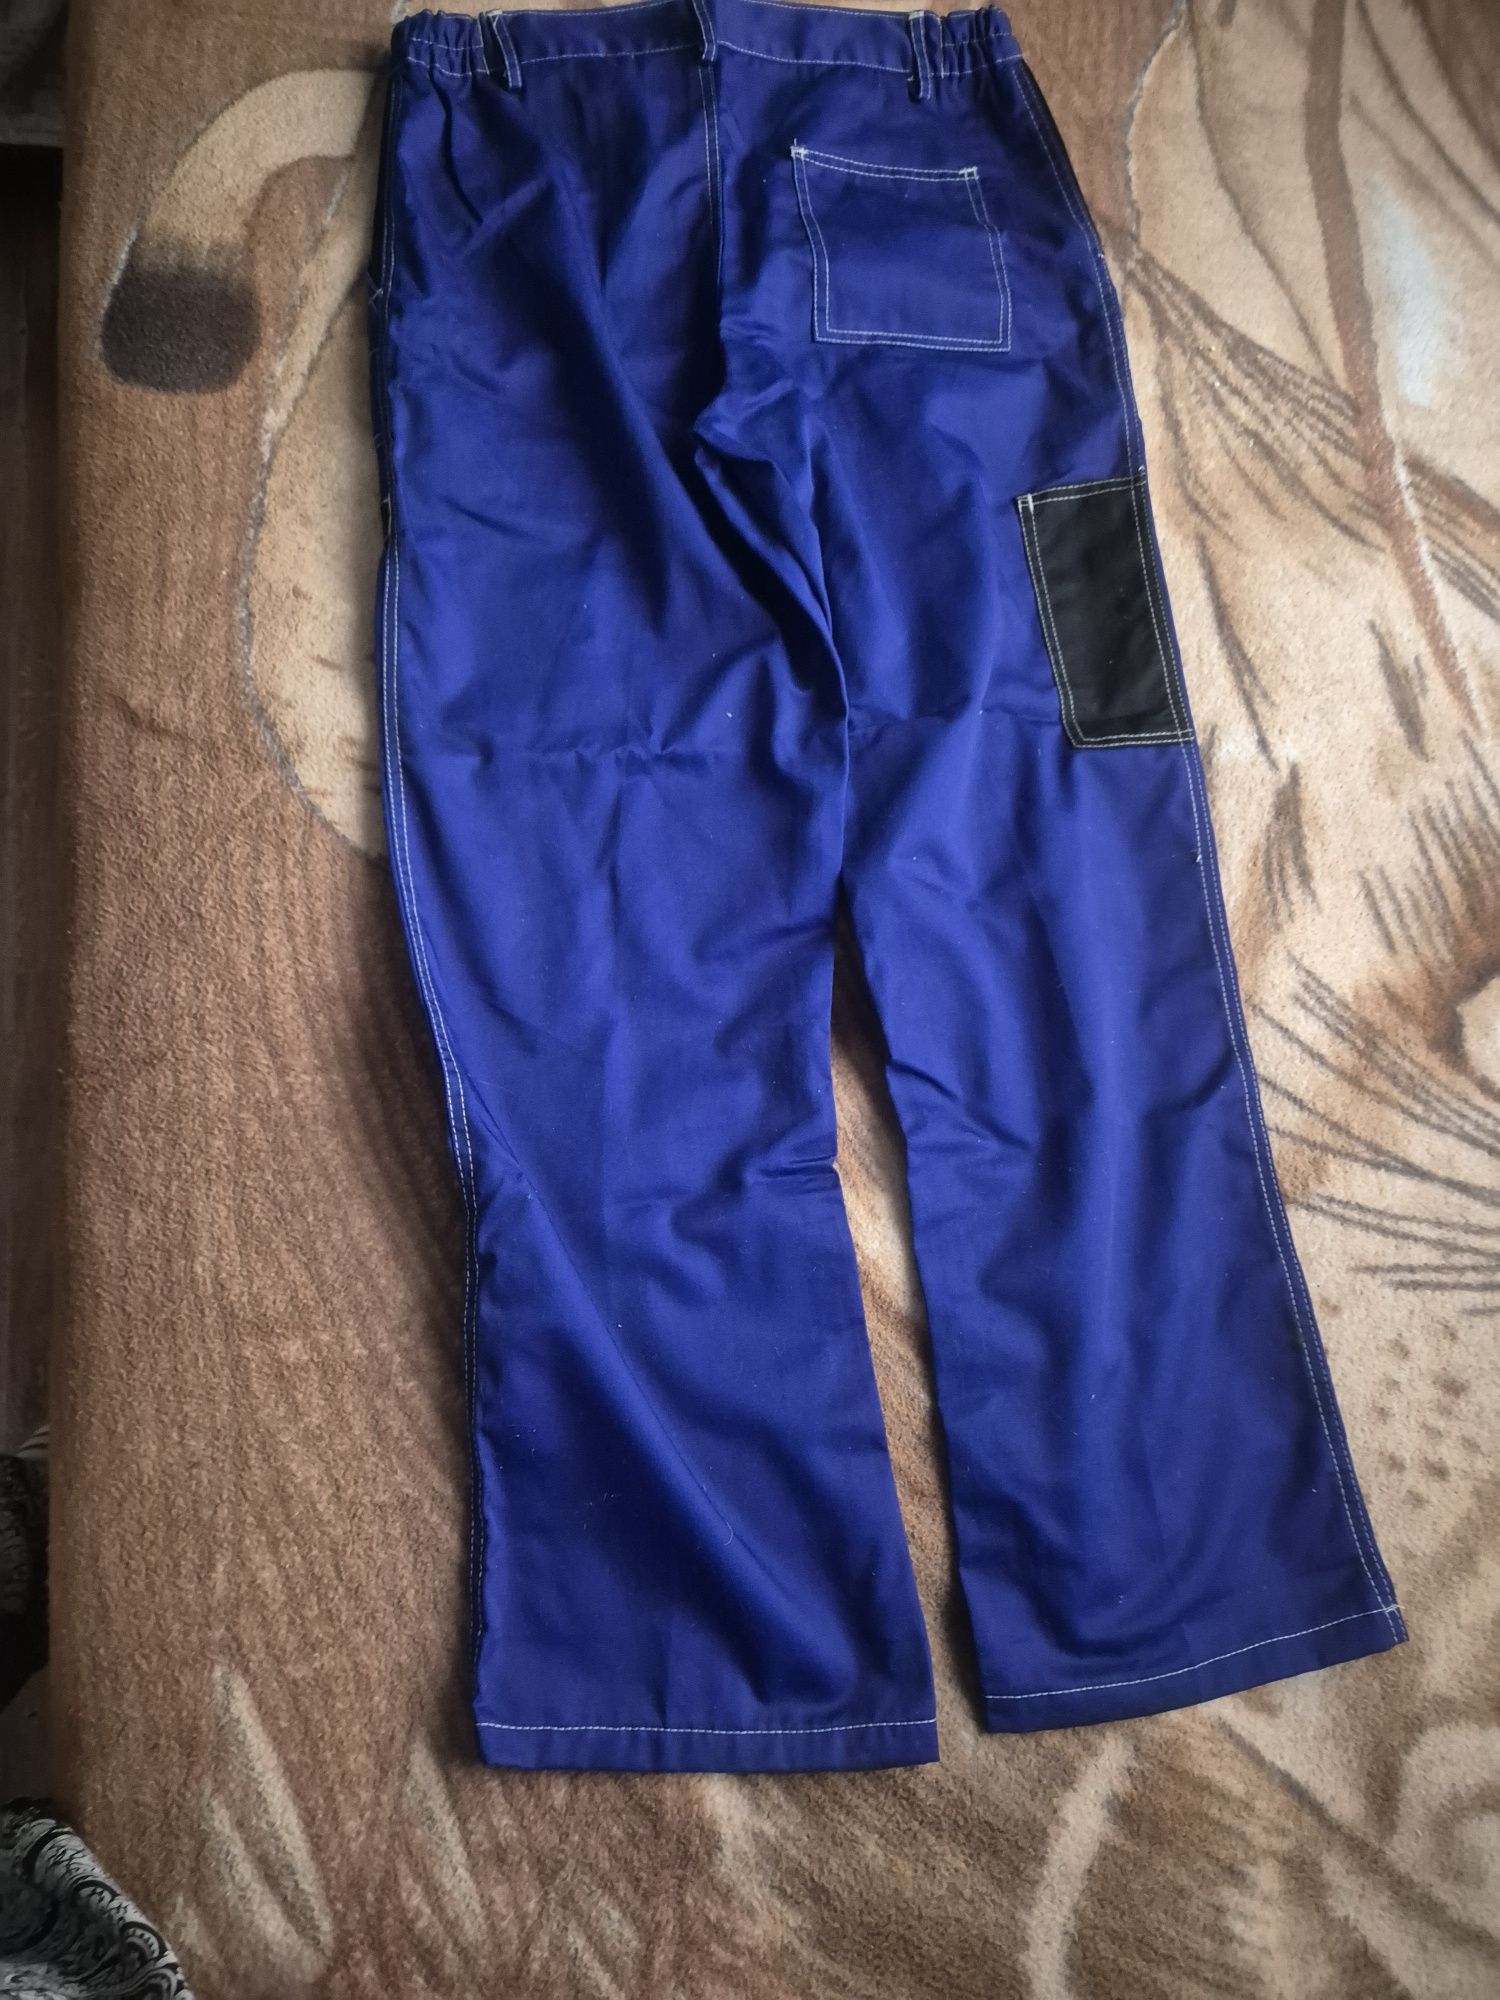 Spodnie i koszula -kurtka robocze